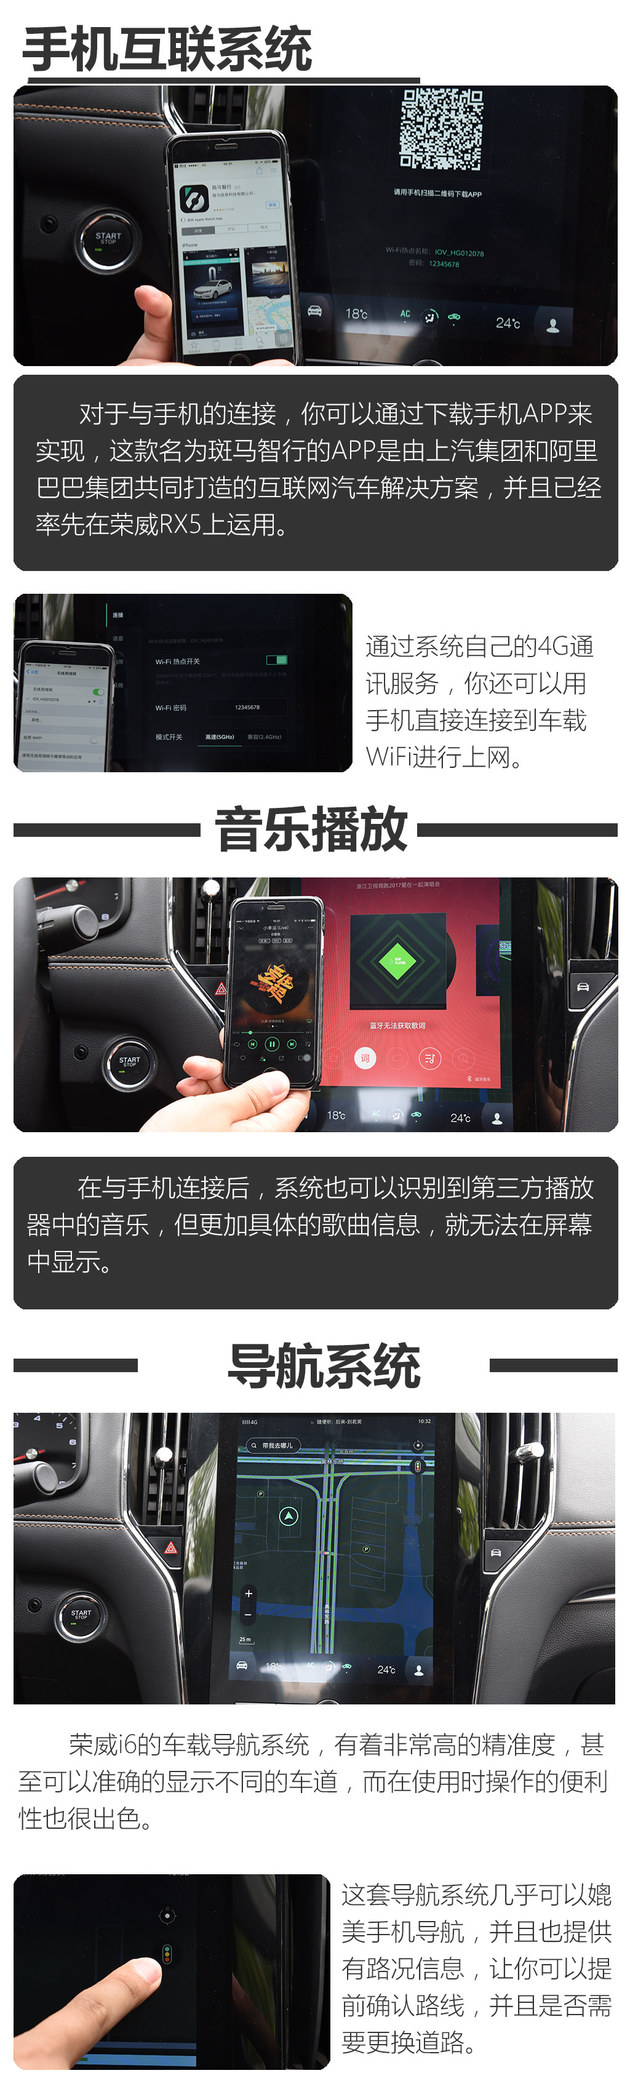 荣威i6多媒体系统体验 搭10.4英寸屏幕